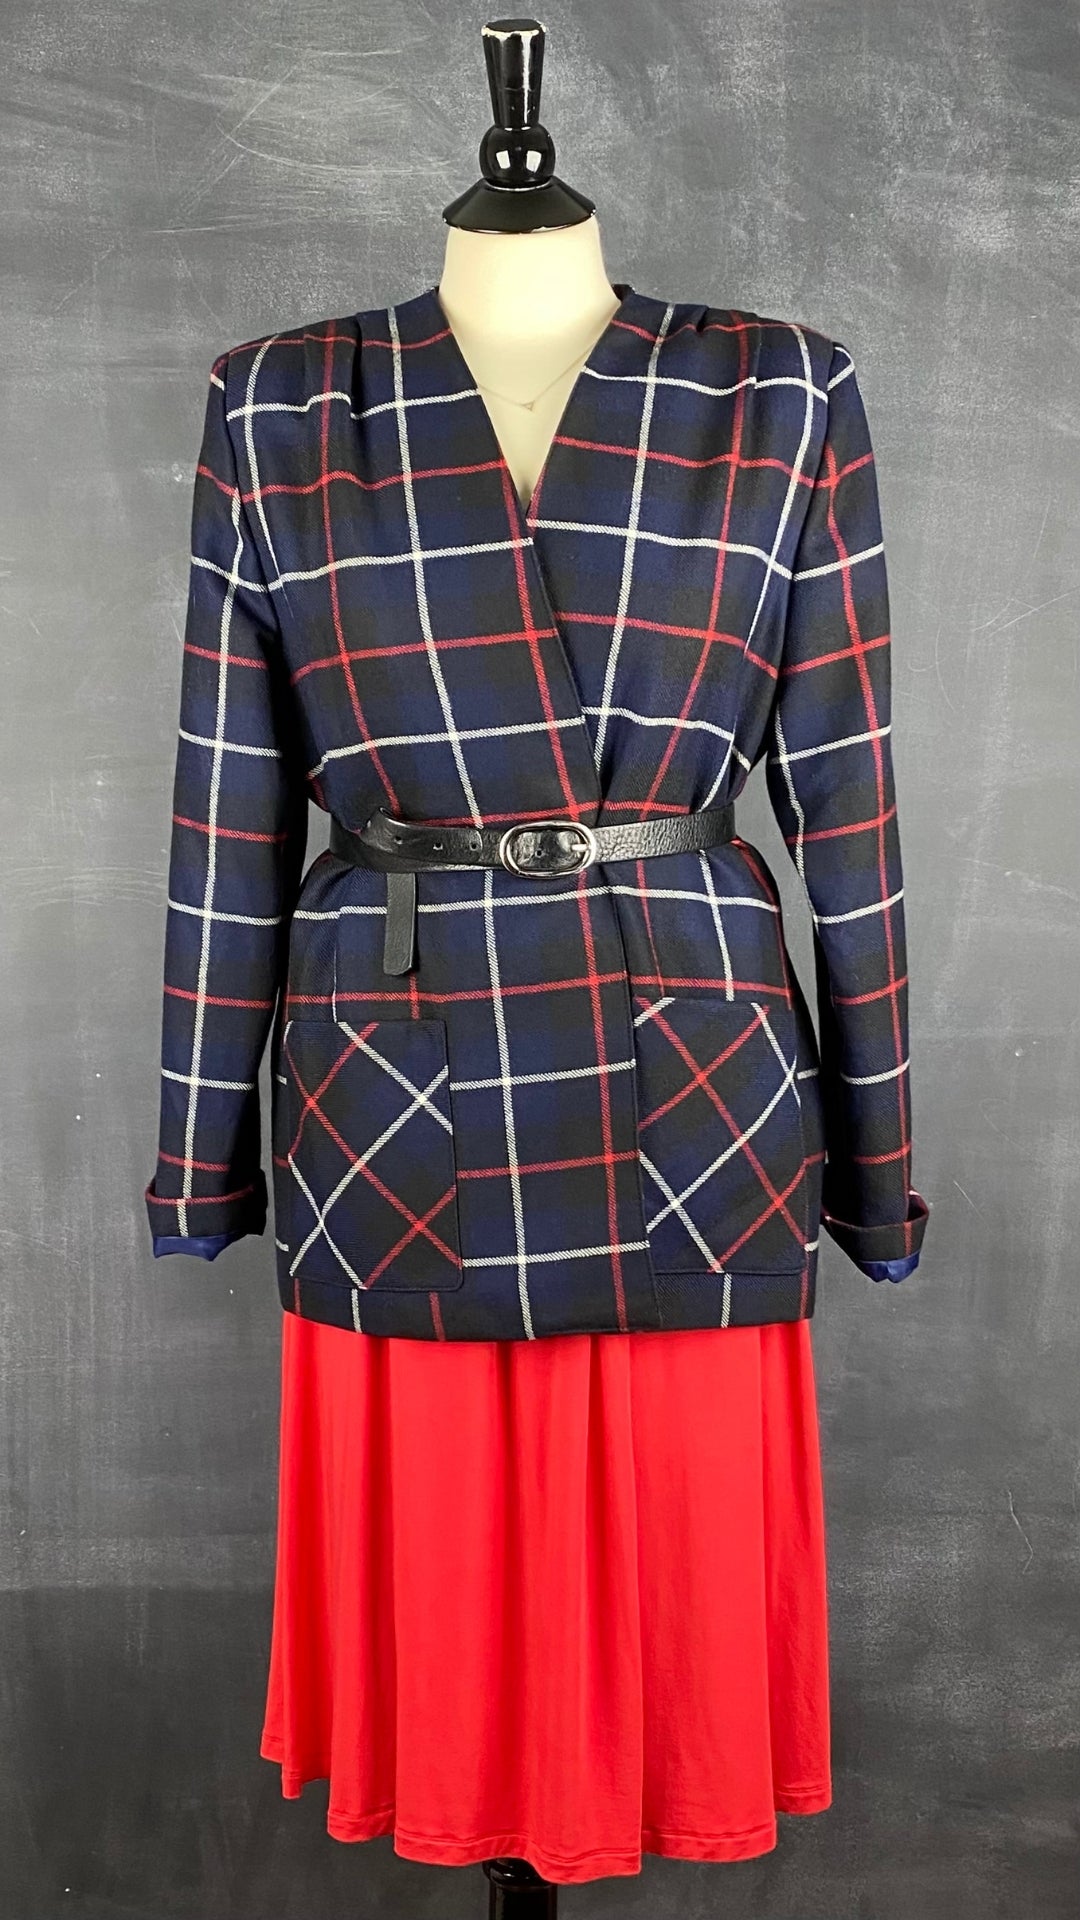 Robe rouge extensible cache-coeur drapé Tristan, taille medium. Vue de l'agencement avec le blazer vintage en laine à carreaux.